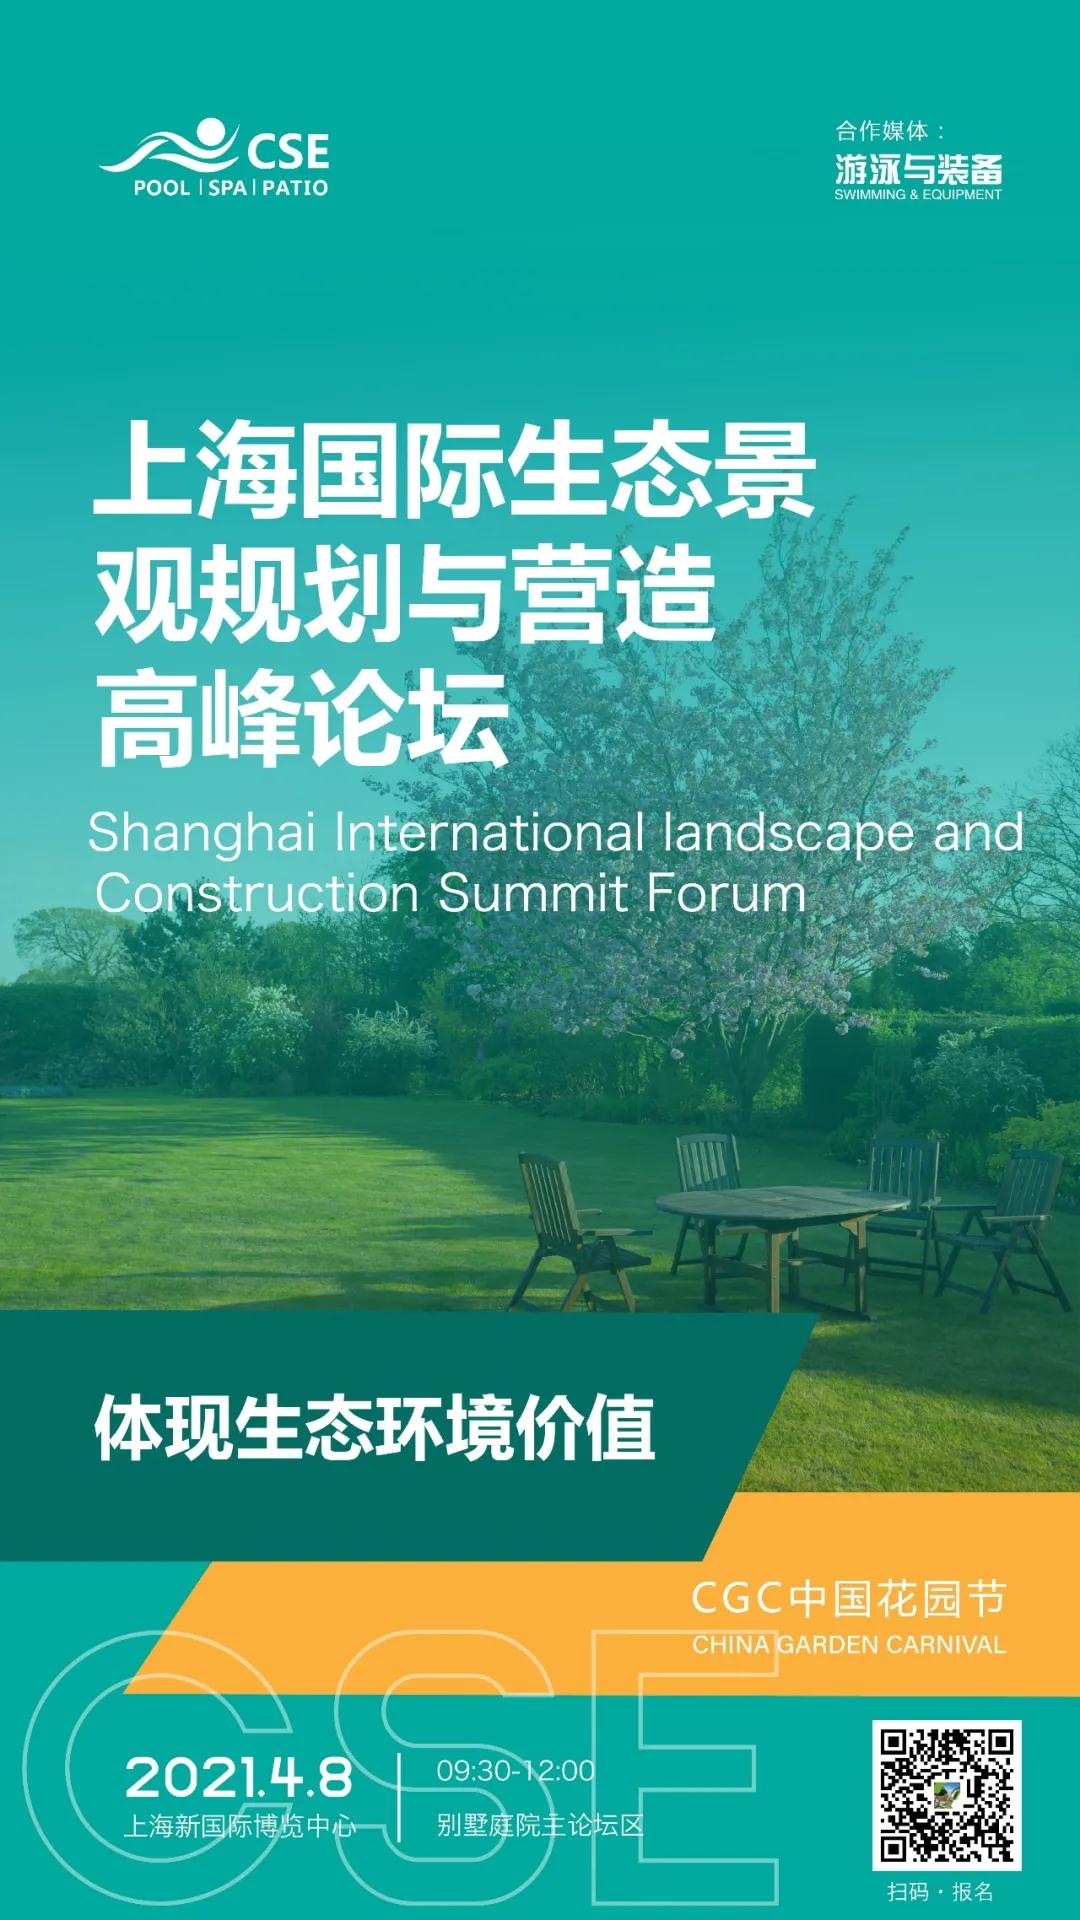 上海国际生态景观规划与营造高峰论坛.jpg